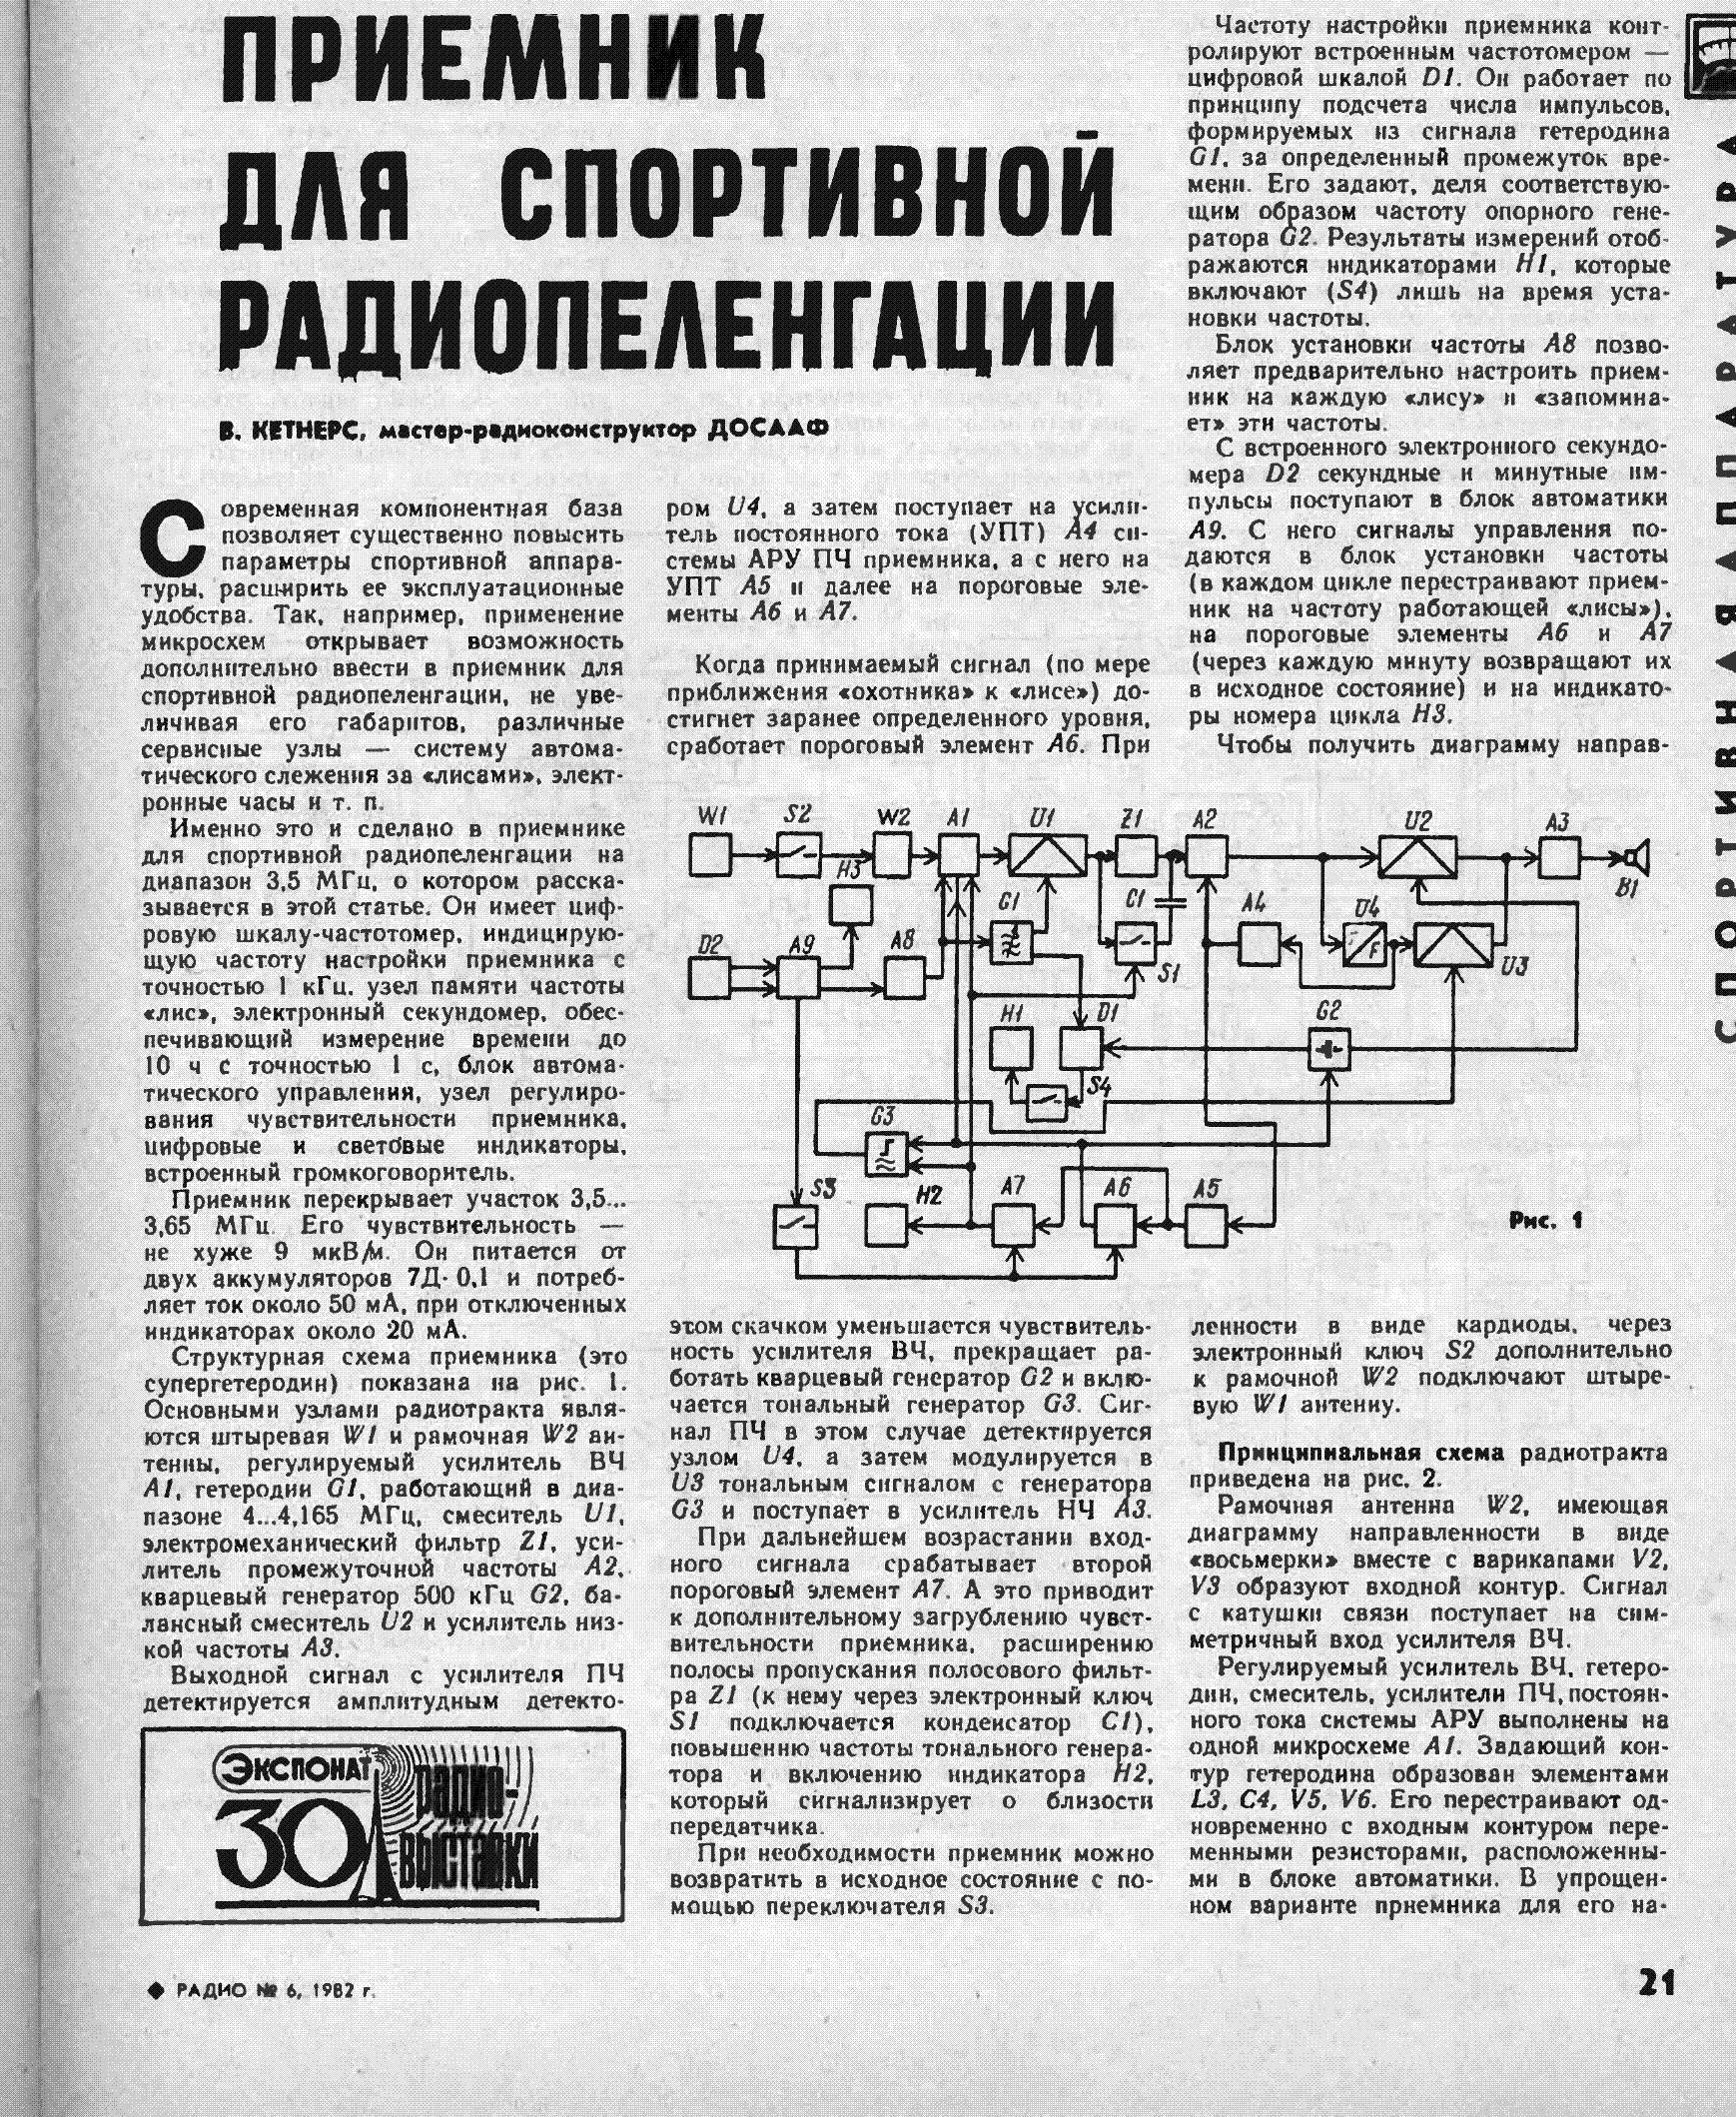 «Принцип излучения электромагнитных волн. Изобретение радио А.С. Поповым. Свойства электромагнитных волн. Распространение радиоволн»